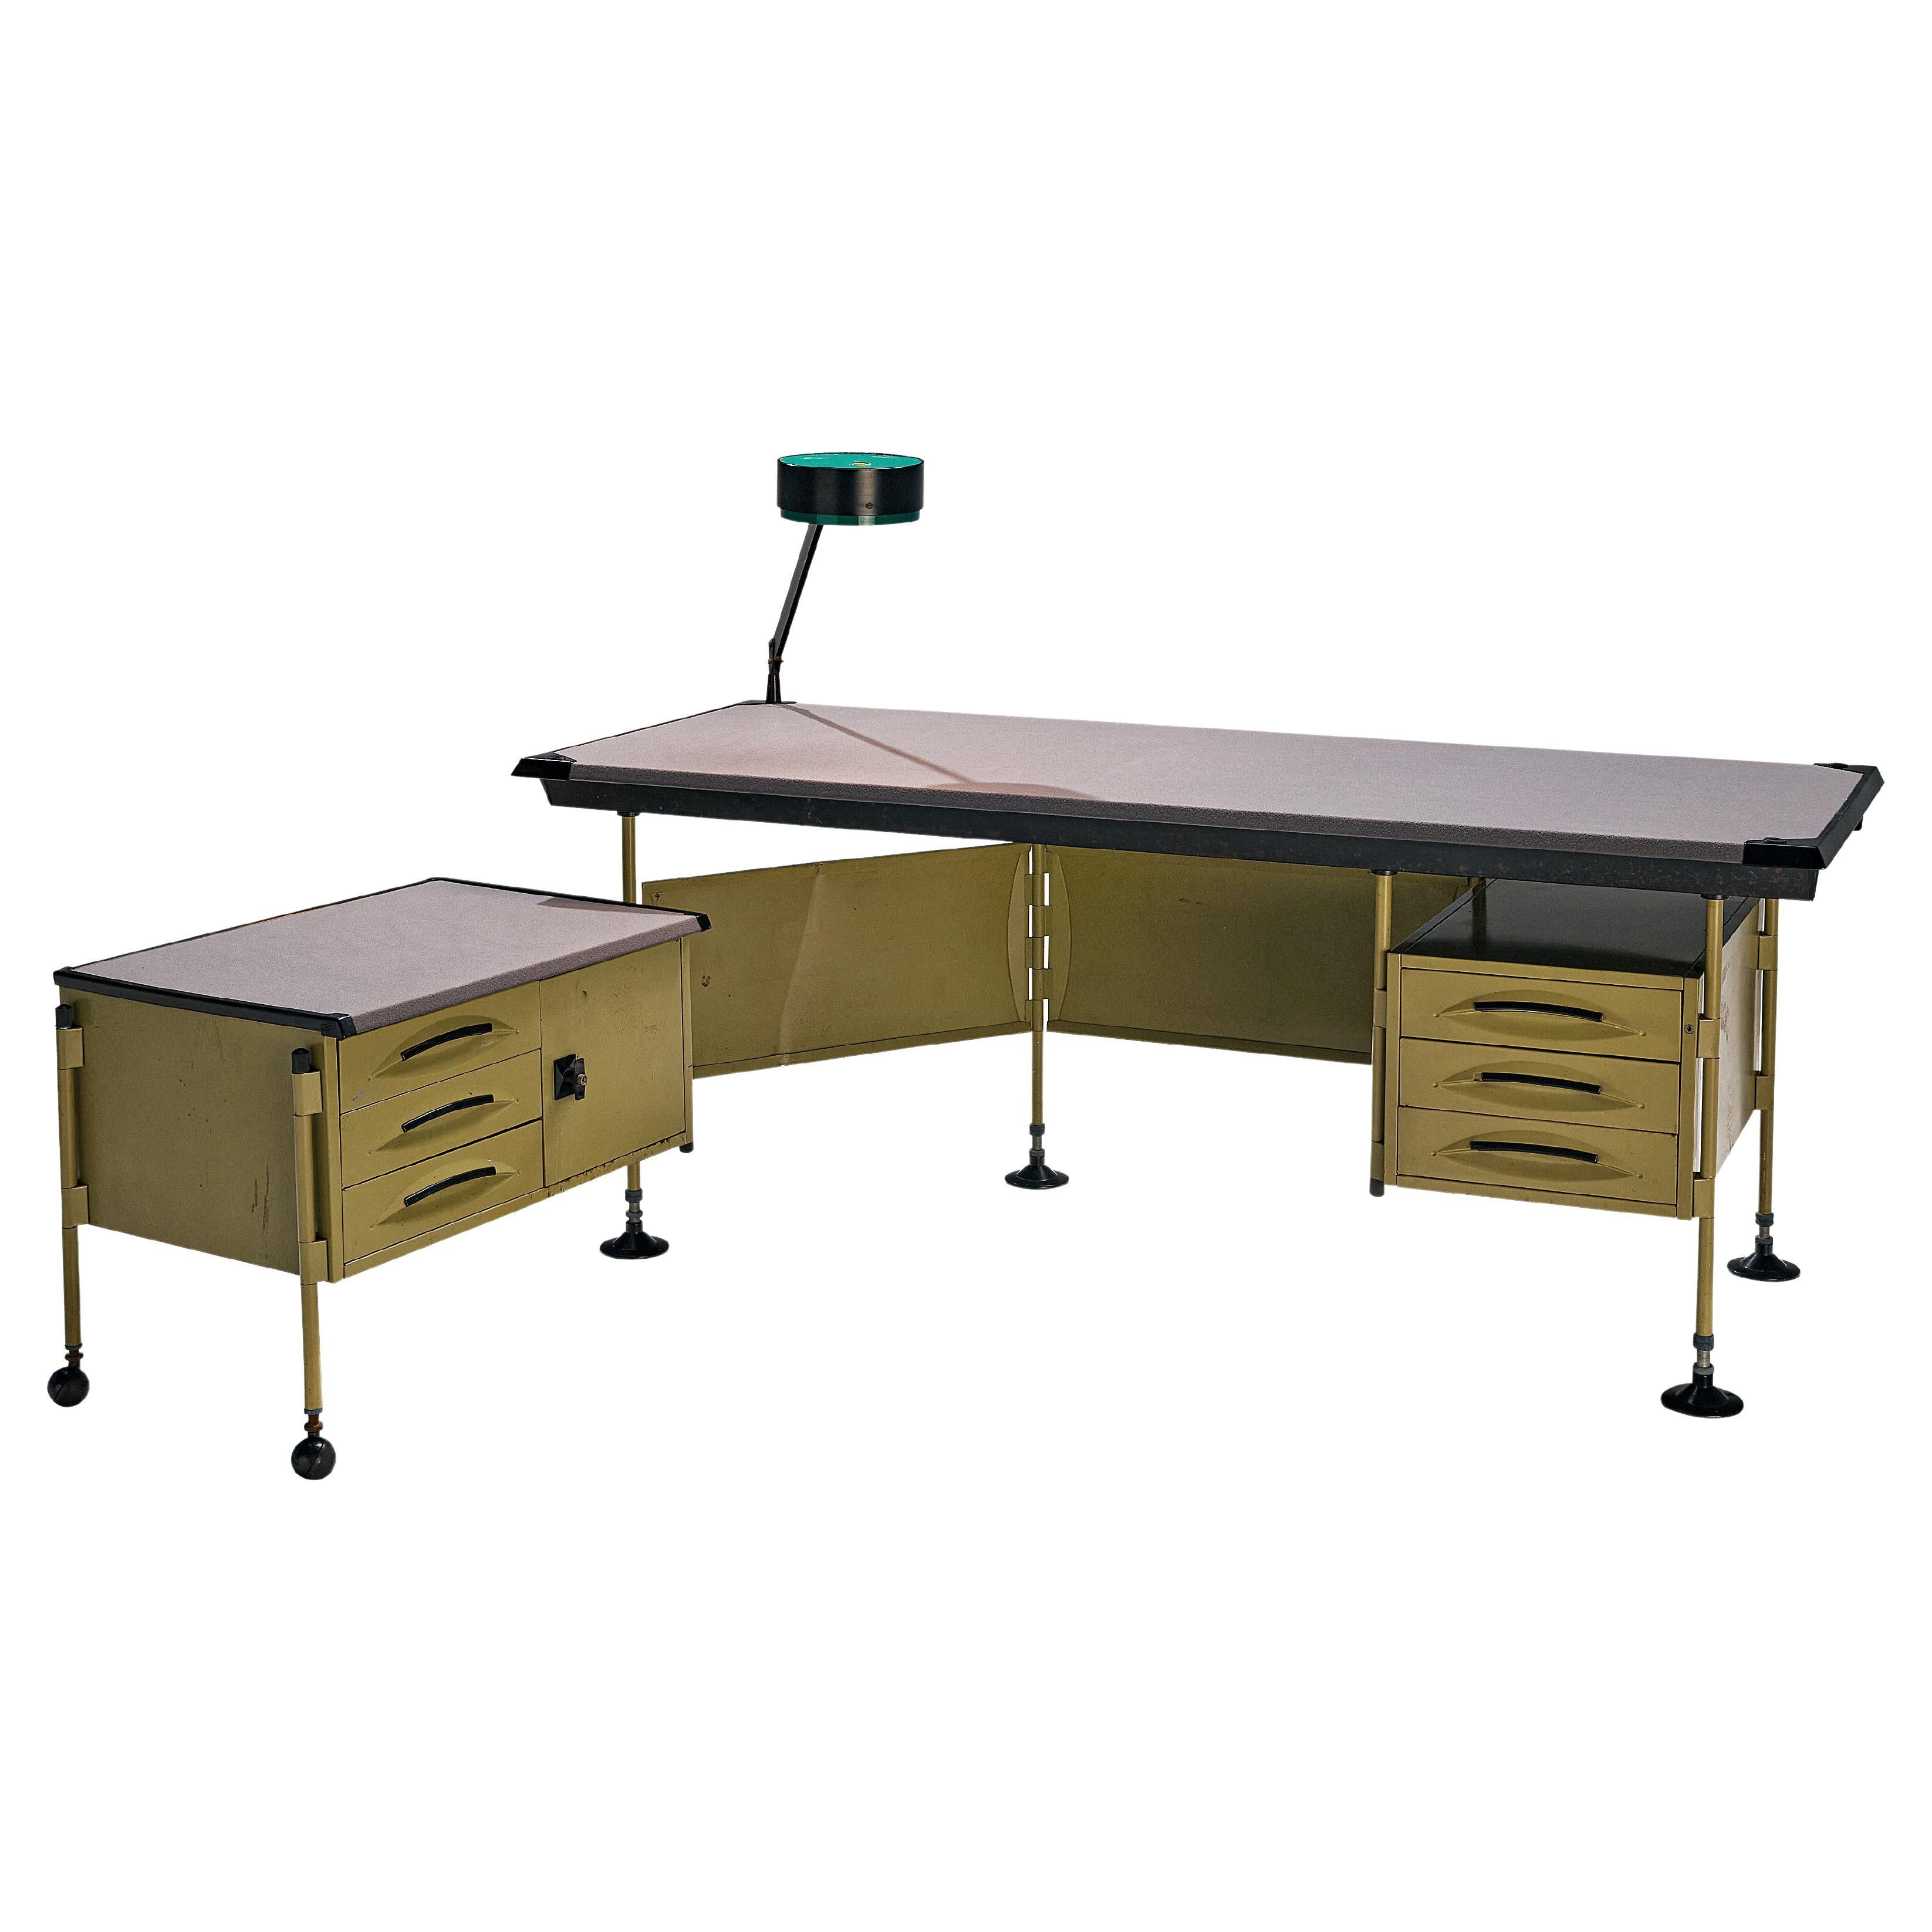 Studio BBPR for Olivetti 'Spazio' Desk with Original Lamp